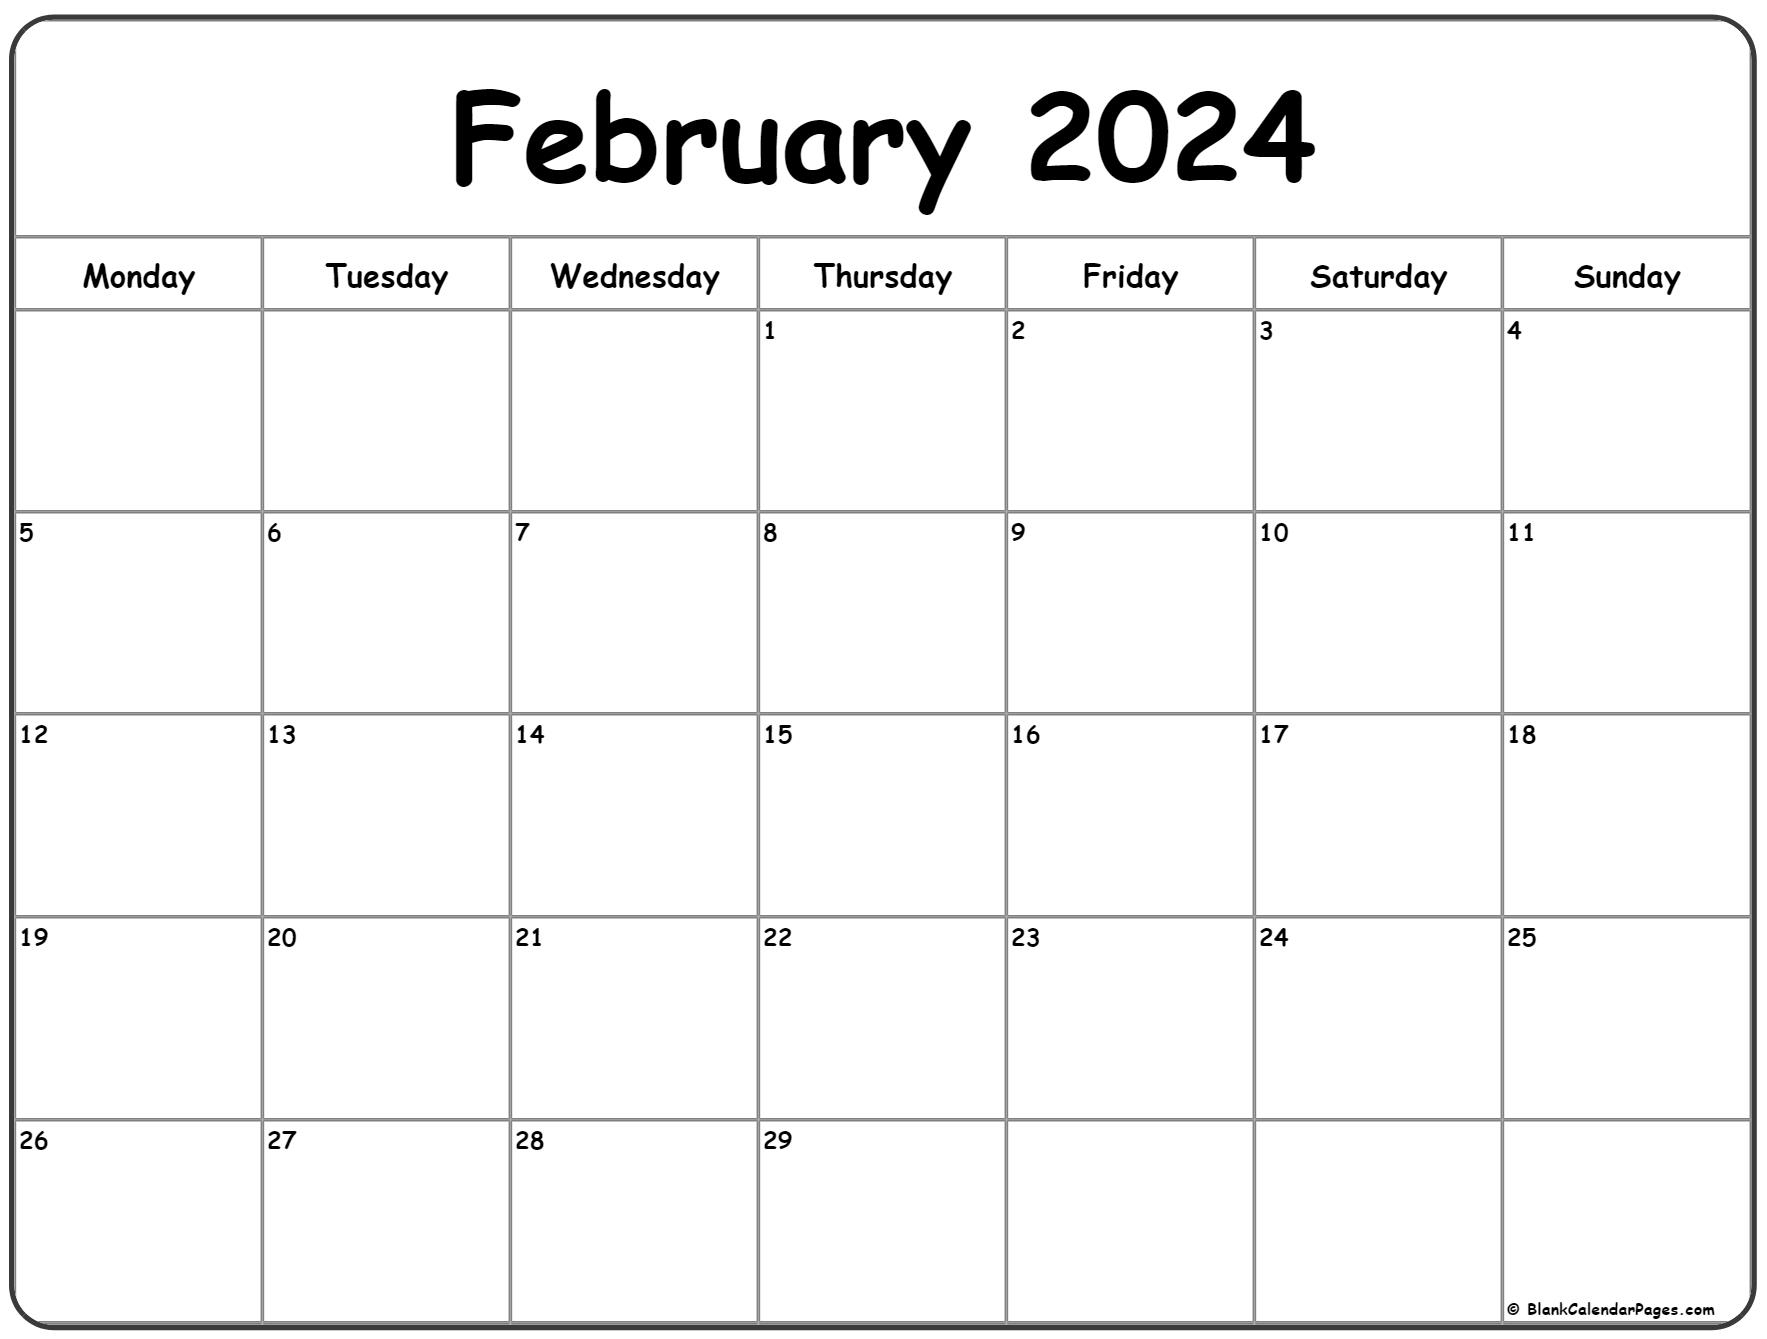 February 2024 Monday Calendar | Monday To Sunday for Calendar February 2024 Printable